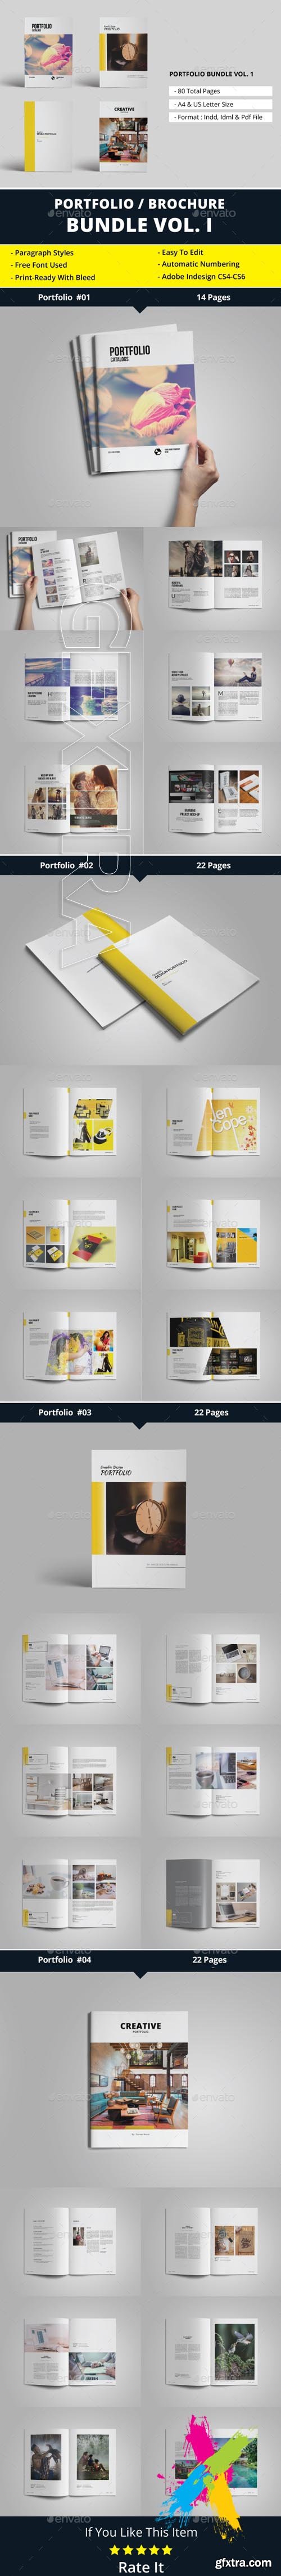 GraphicRiver - Portfolio Brochure Bundle Vol. 1 20384091